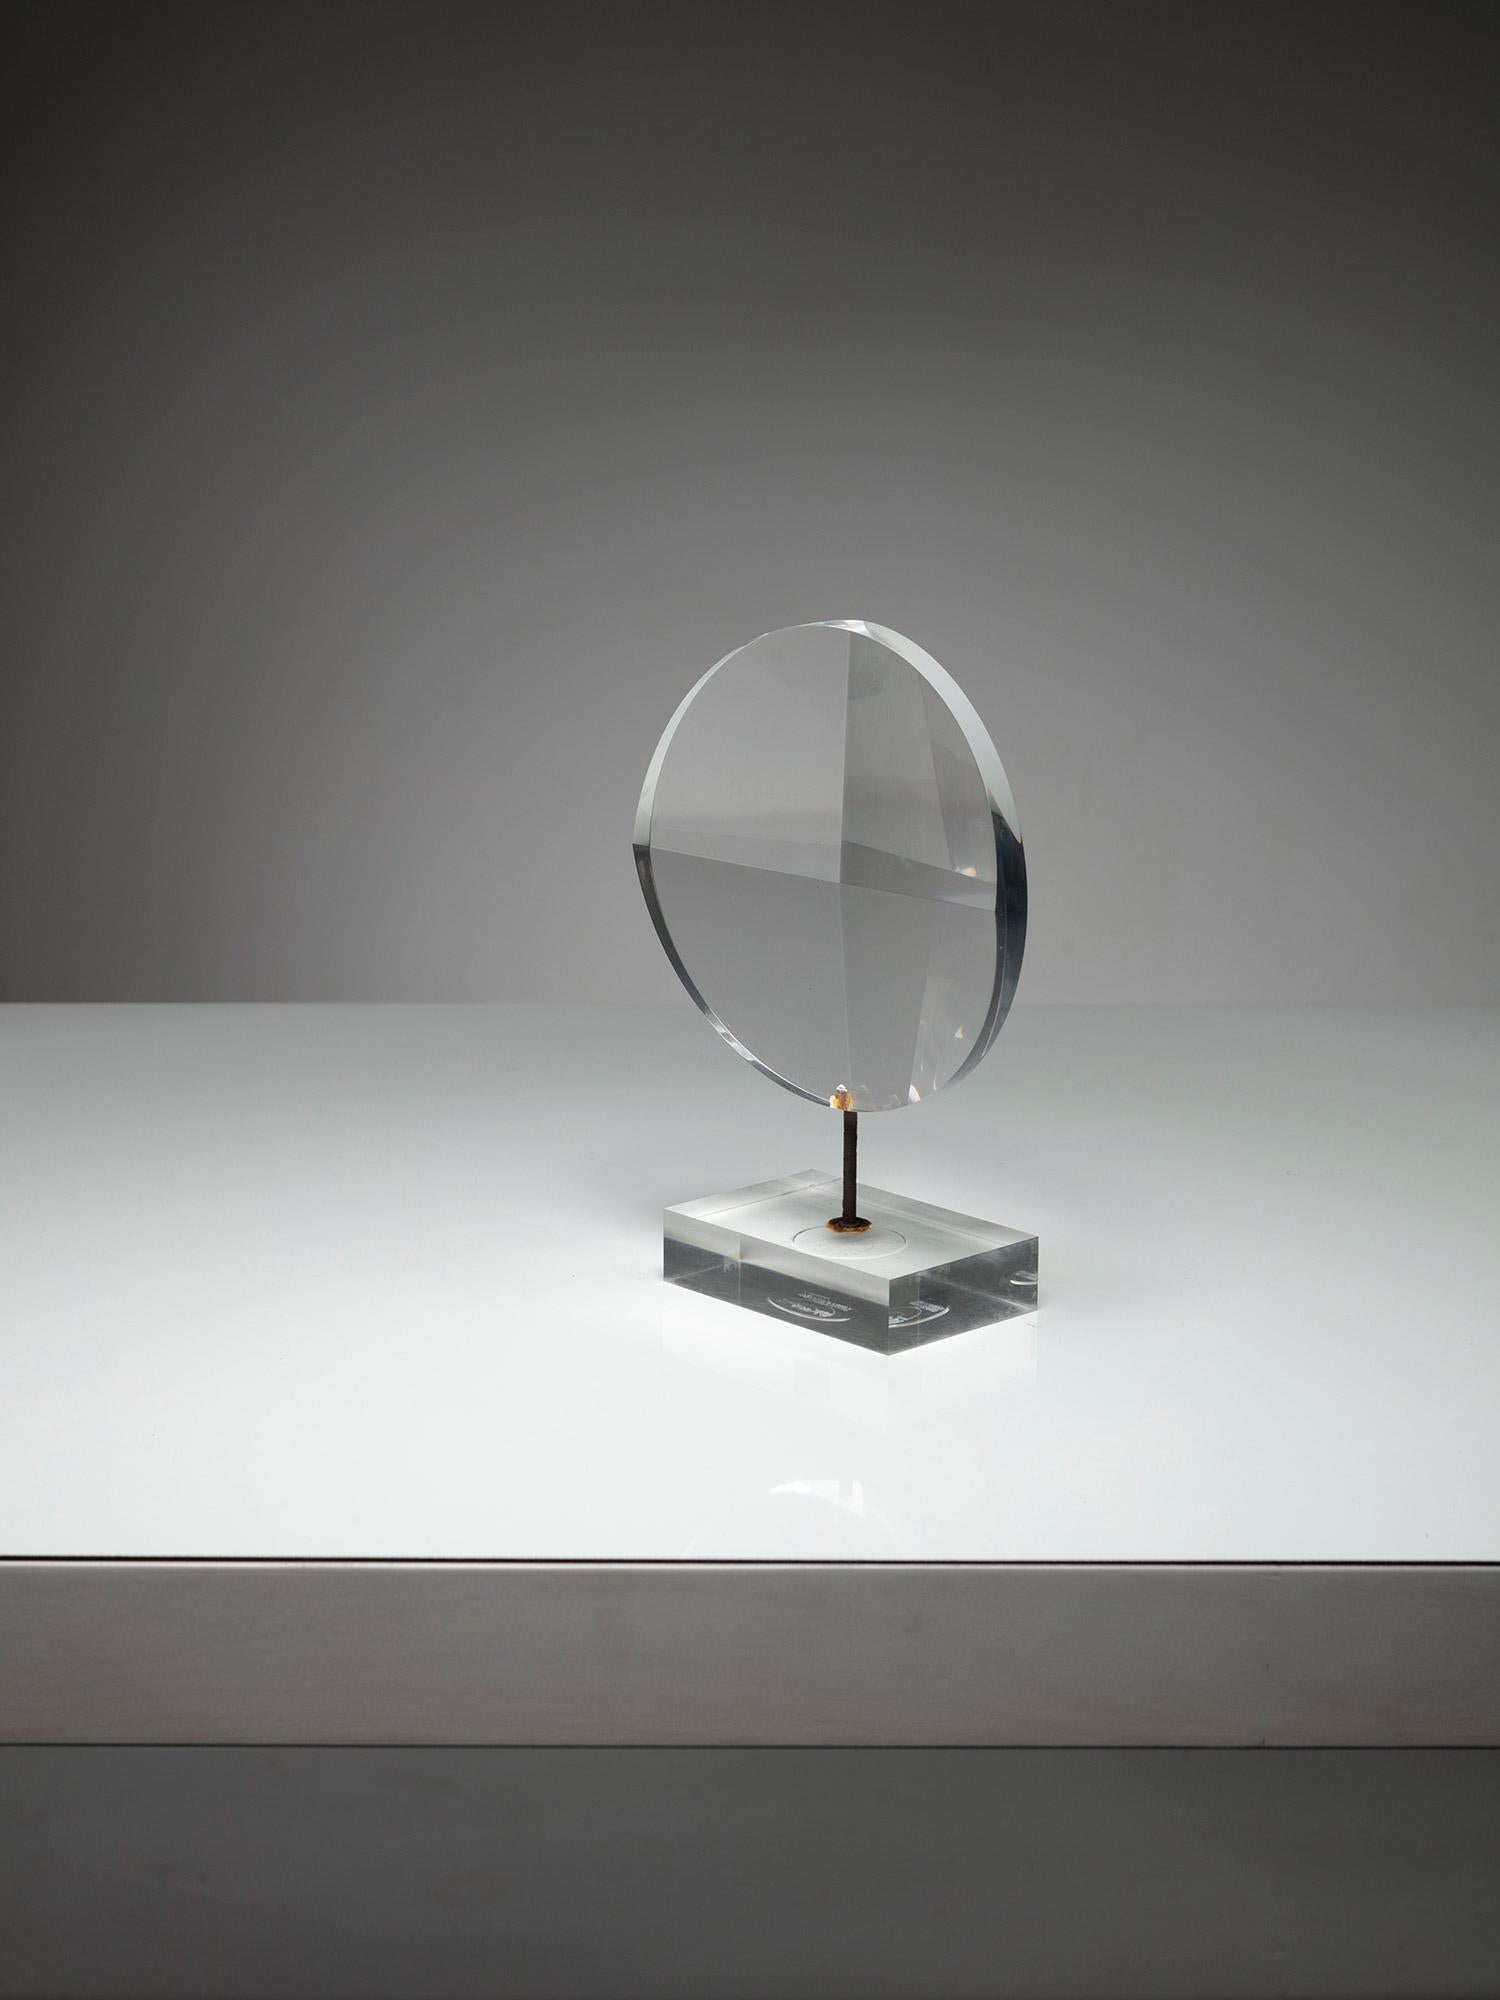 Remarquable sculpture optique d'Alessio Tasca pour Fusina.
Forme circulaire avec des faces découpées générant des réfractions infinies.